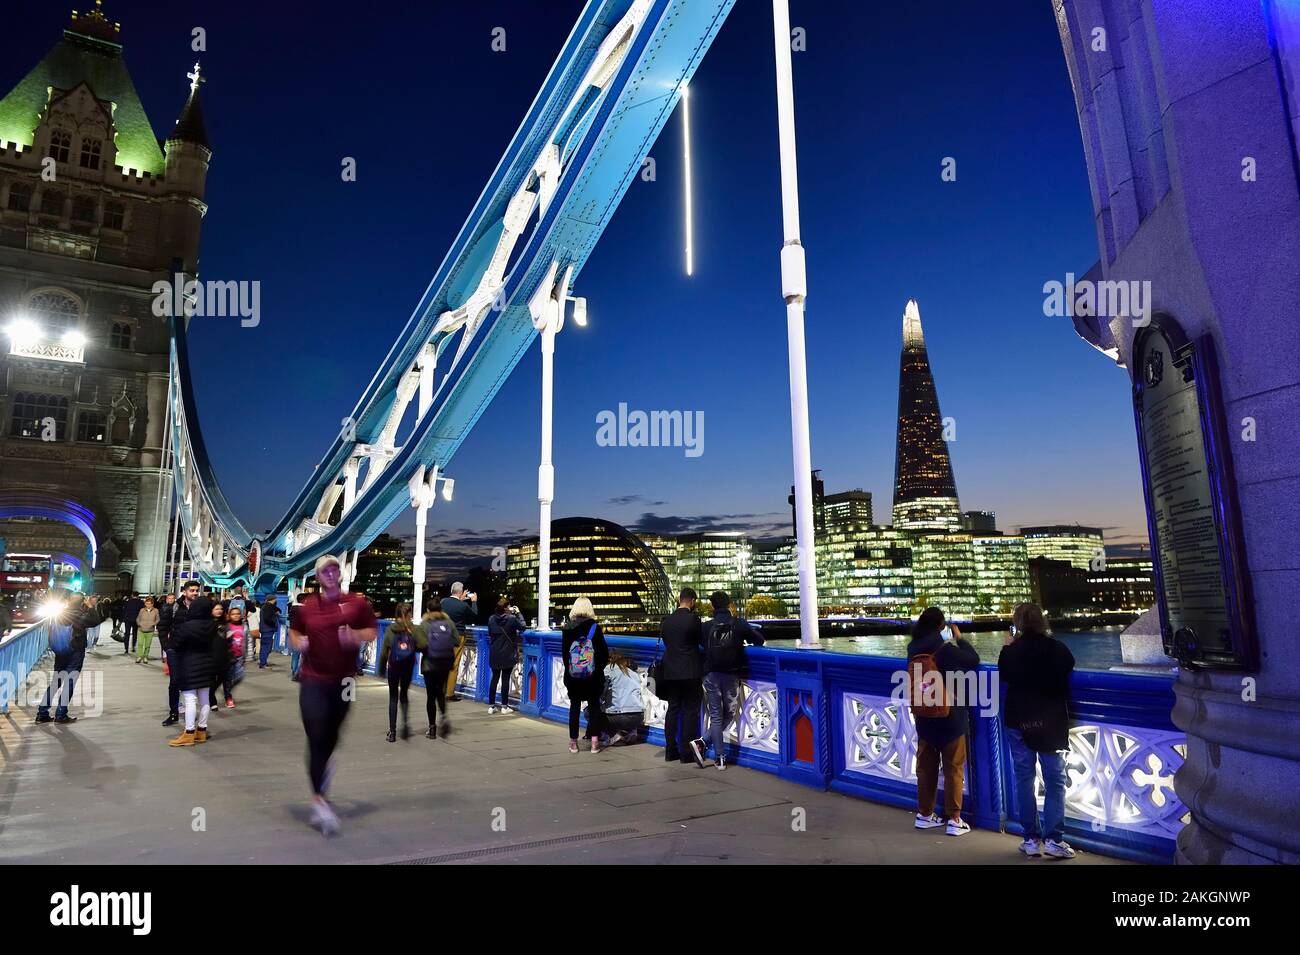 Reino Unido, Londres, Tower Bridge, levante el puente que cruza el río  Támesis, entre los distritos de Southwark y Tower Hamlets y el Shard London  Bridge Tower por el arquitecto Renzo Piano,